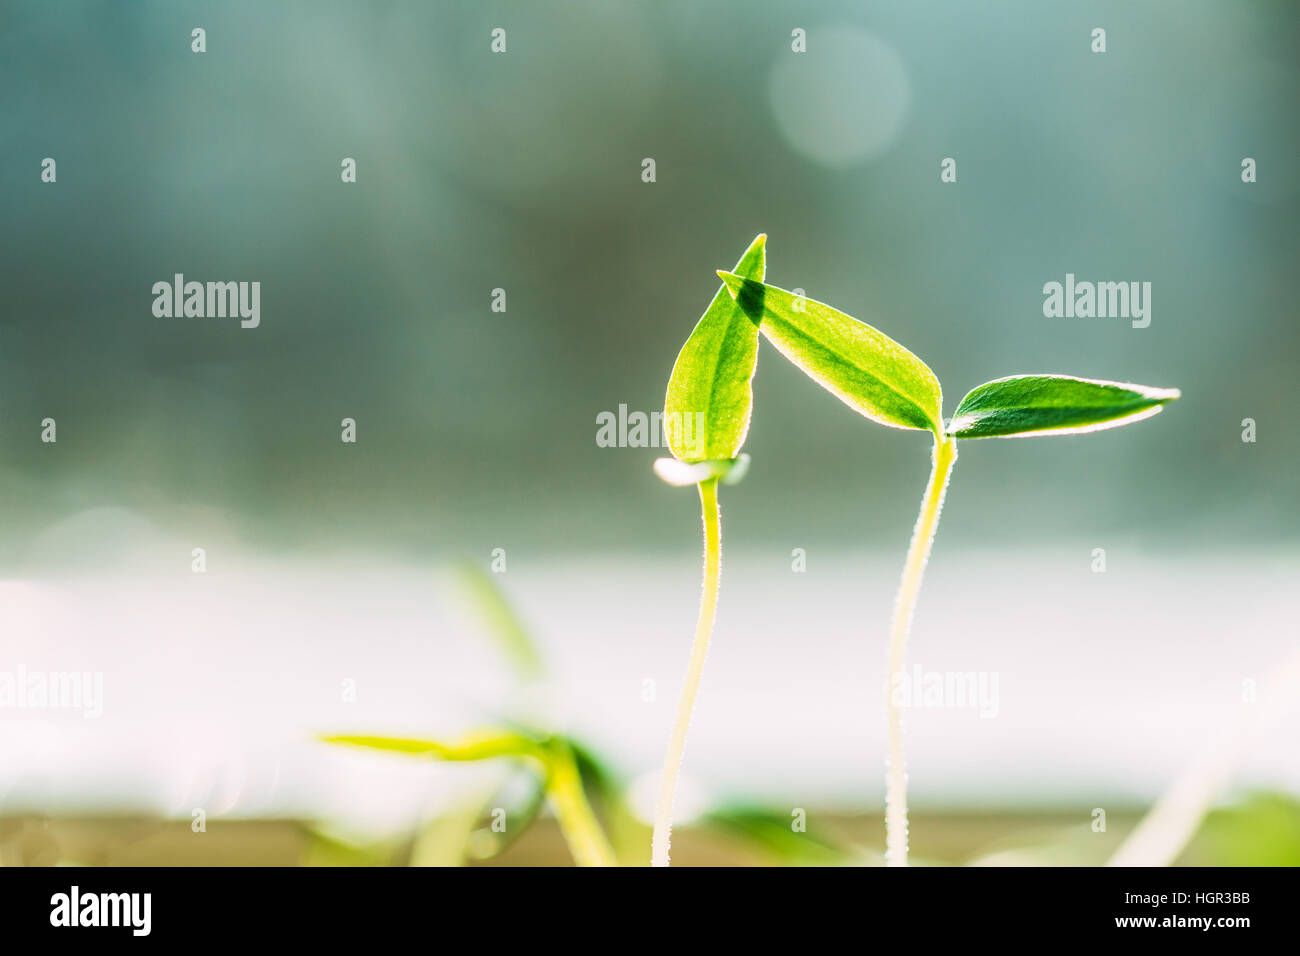 Zwei grüne Sprossen mit Blatt, Blätter aus dem Boden wachsen. Frühling-Konzept des neuen Lebens. Landwirtschaftlichen Saison Stockfoto